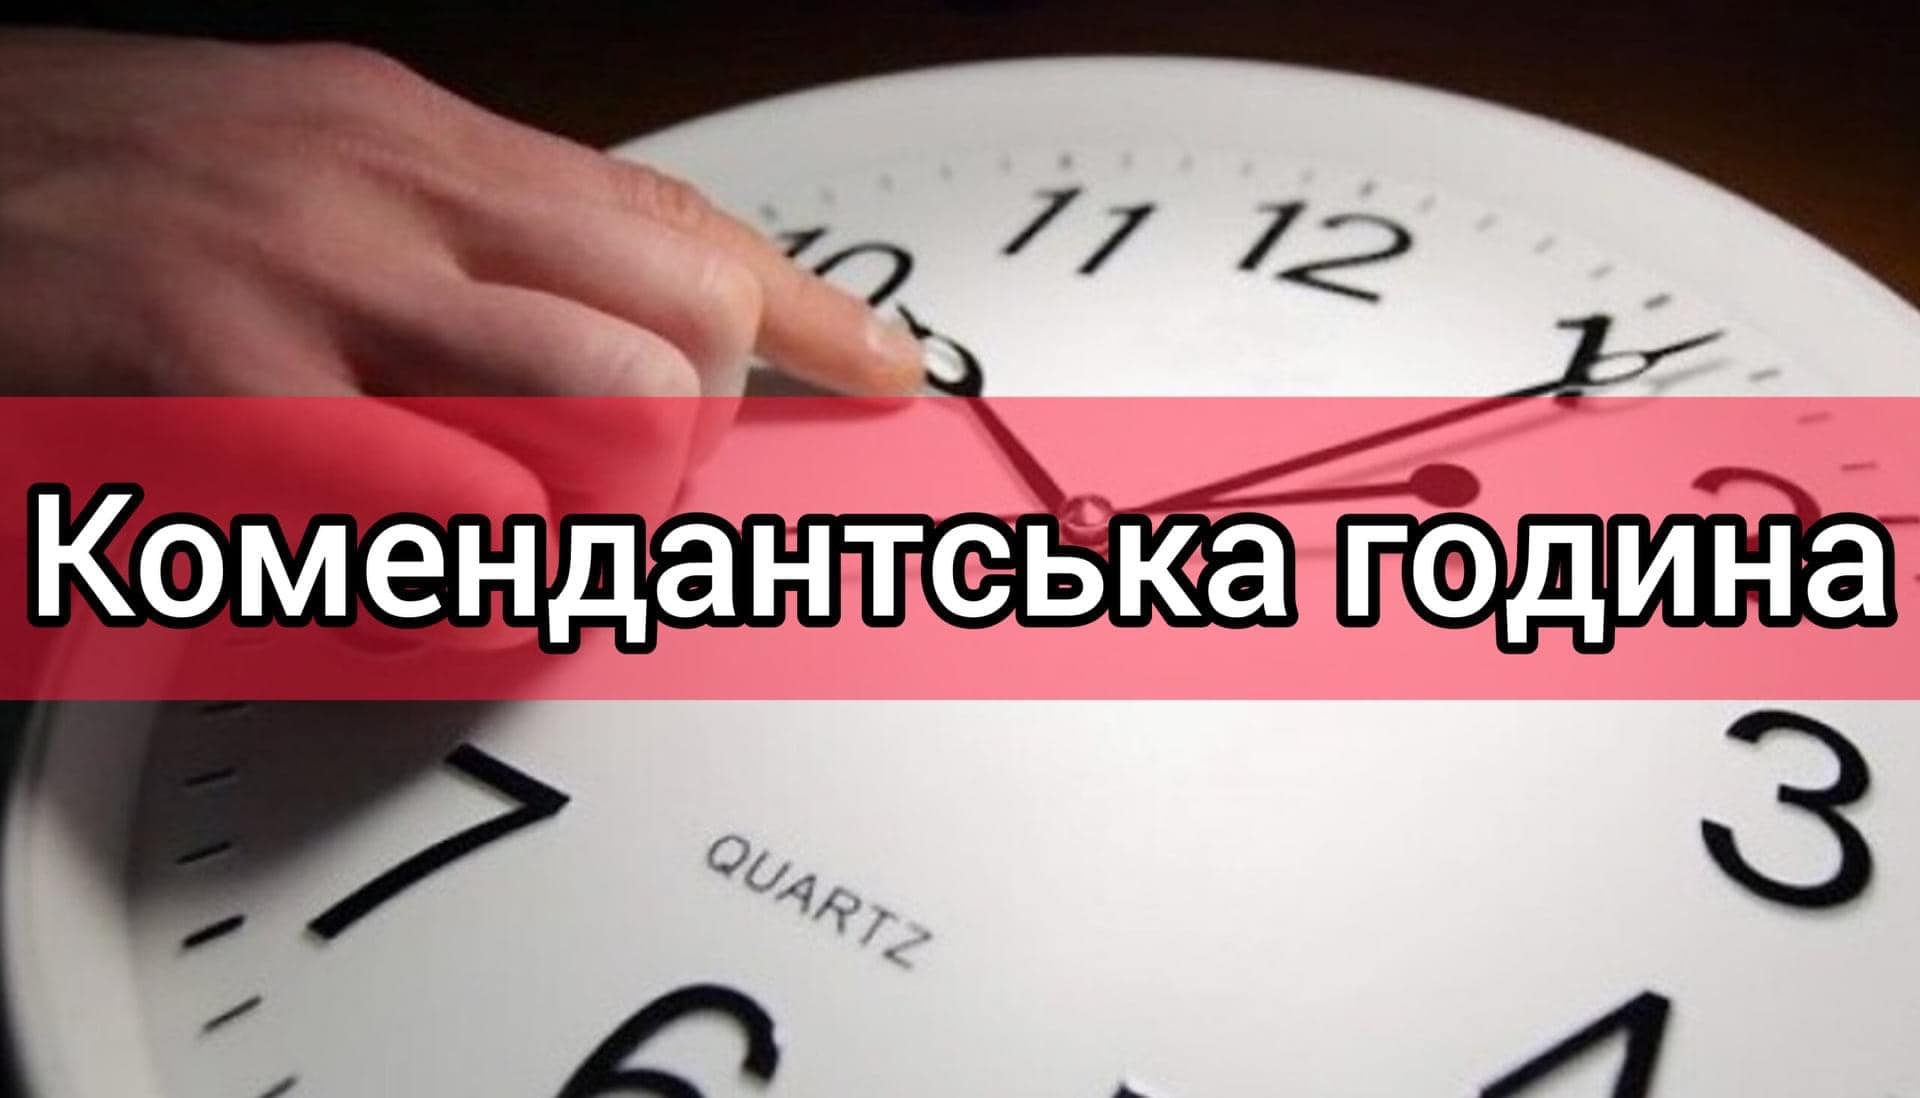 З 1 грудня комендантська година на Миколаївщині, окрім декількох громад, буде з 00:00 до 05:00 (ДОКУМЕНТ) 6